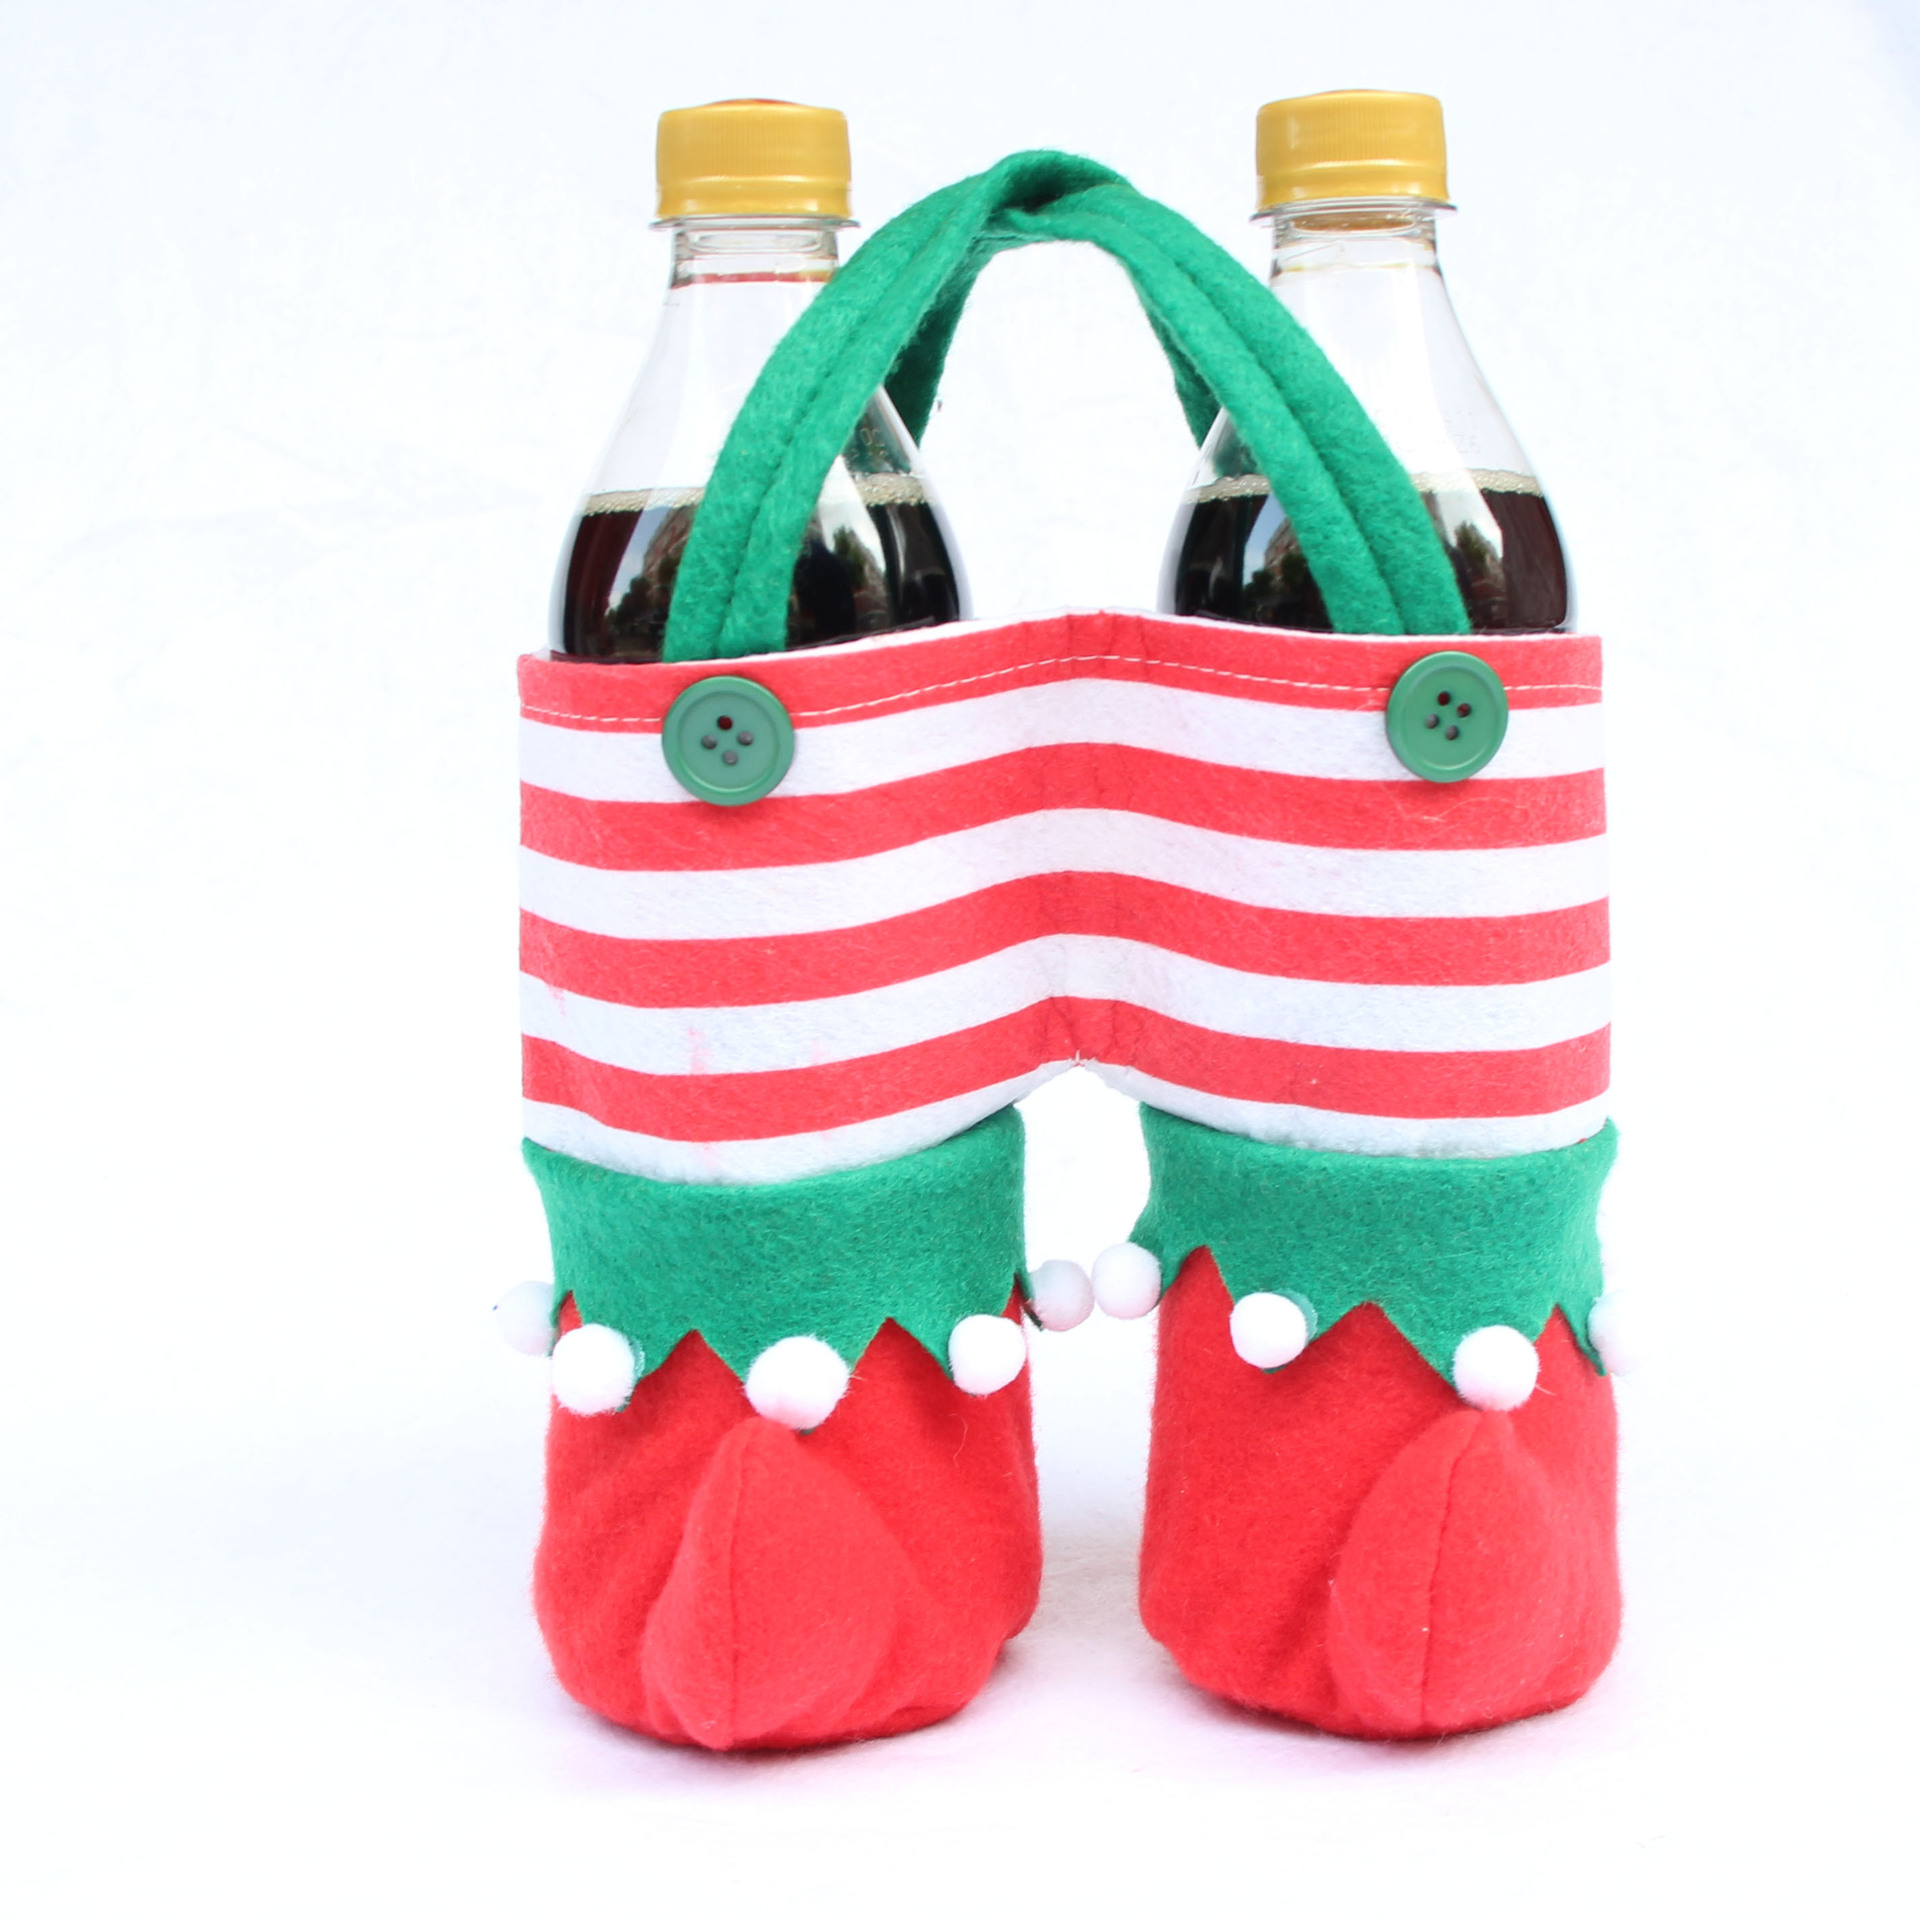 圣誕裝飾品 圣誕精靈袋 圣誕精靈可樂袋 圣誕糖果袋